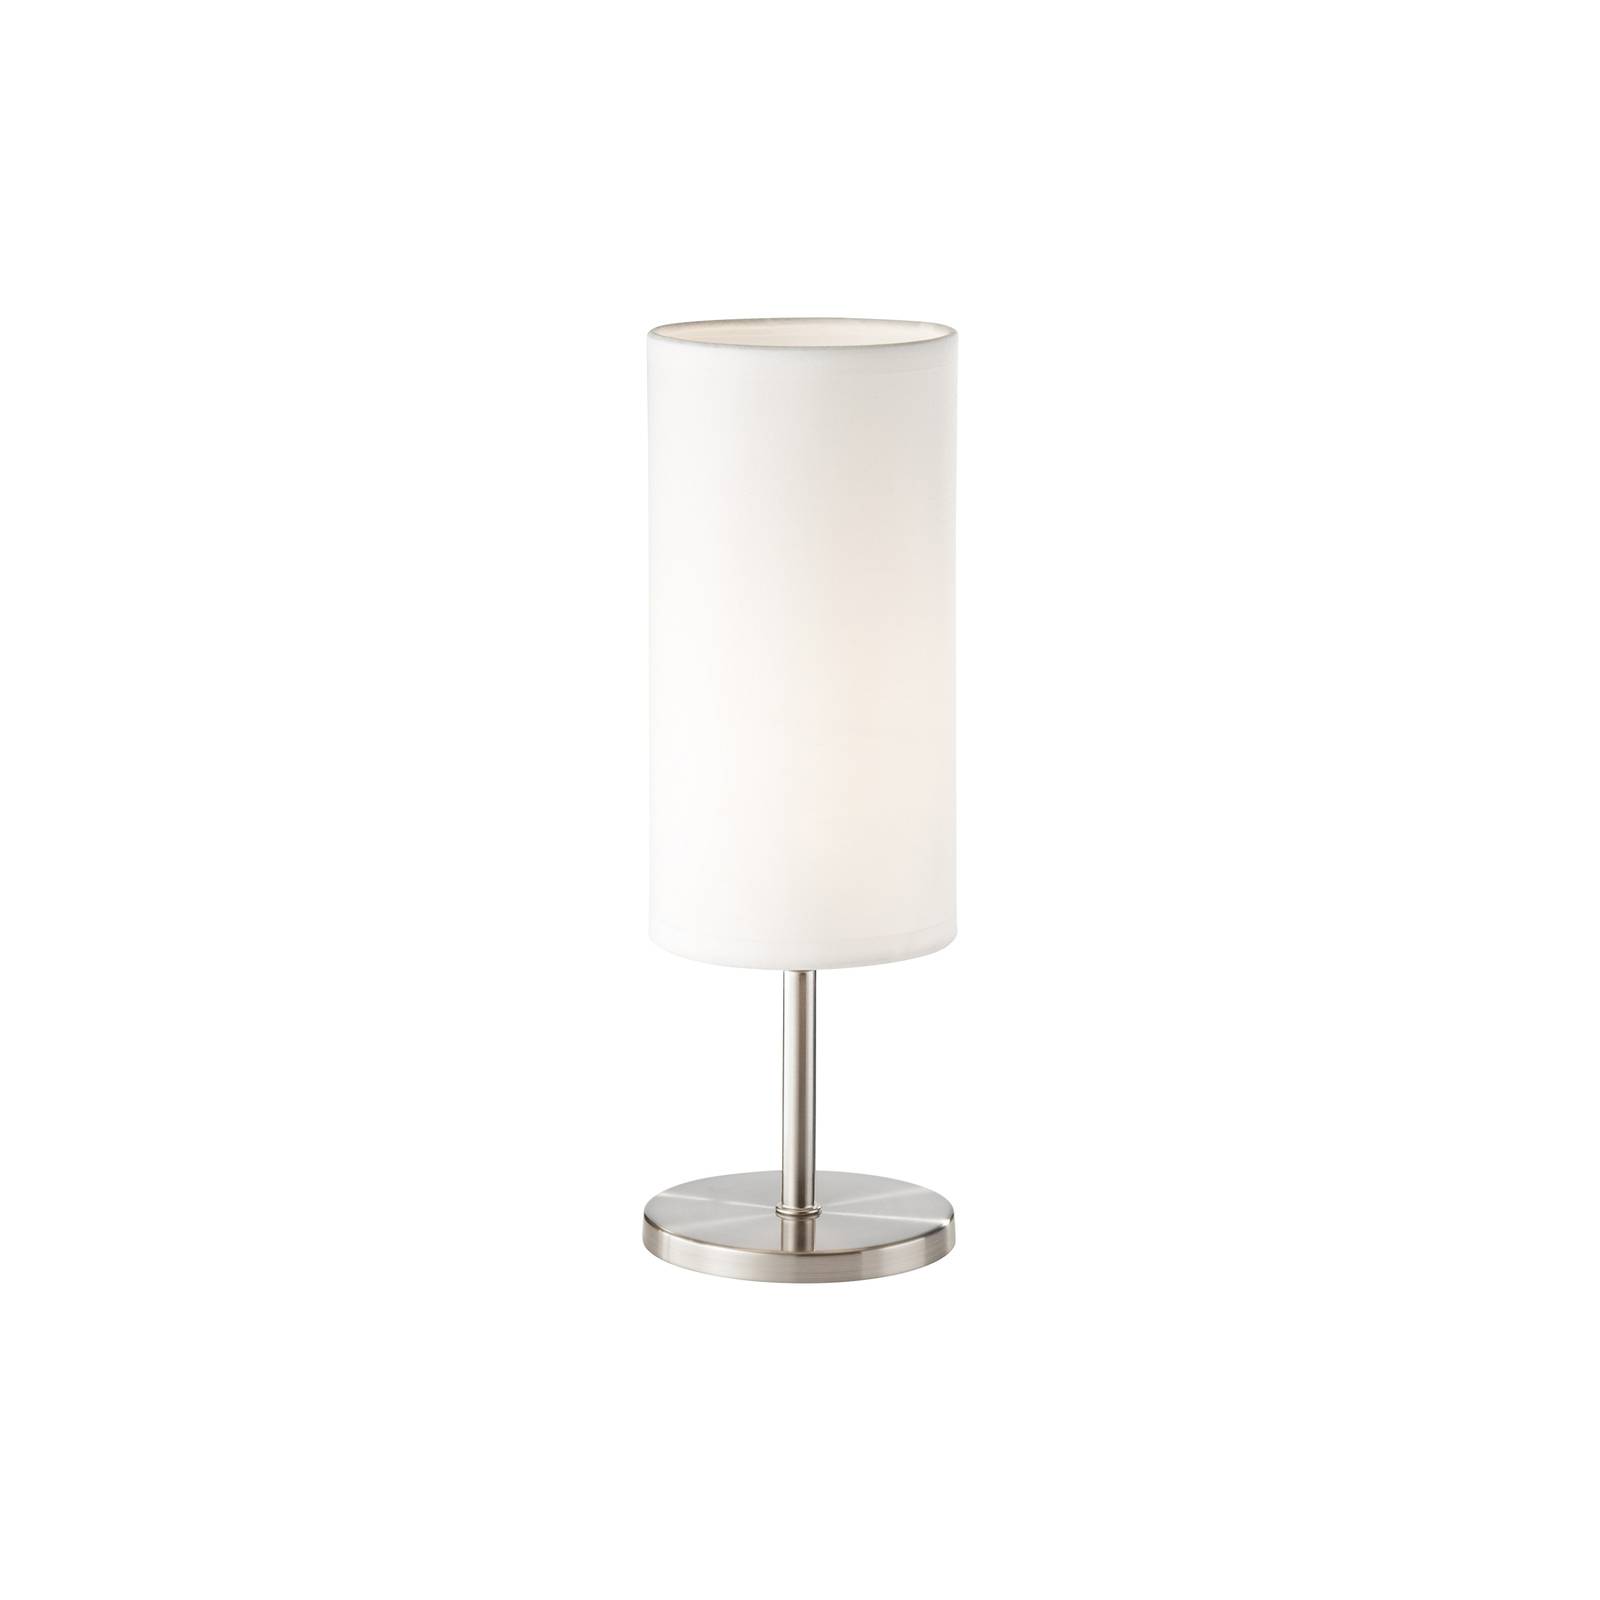 Pöytälamppu Kira tekstiili nikkeli/valkoinen